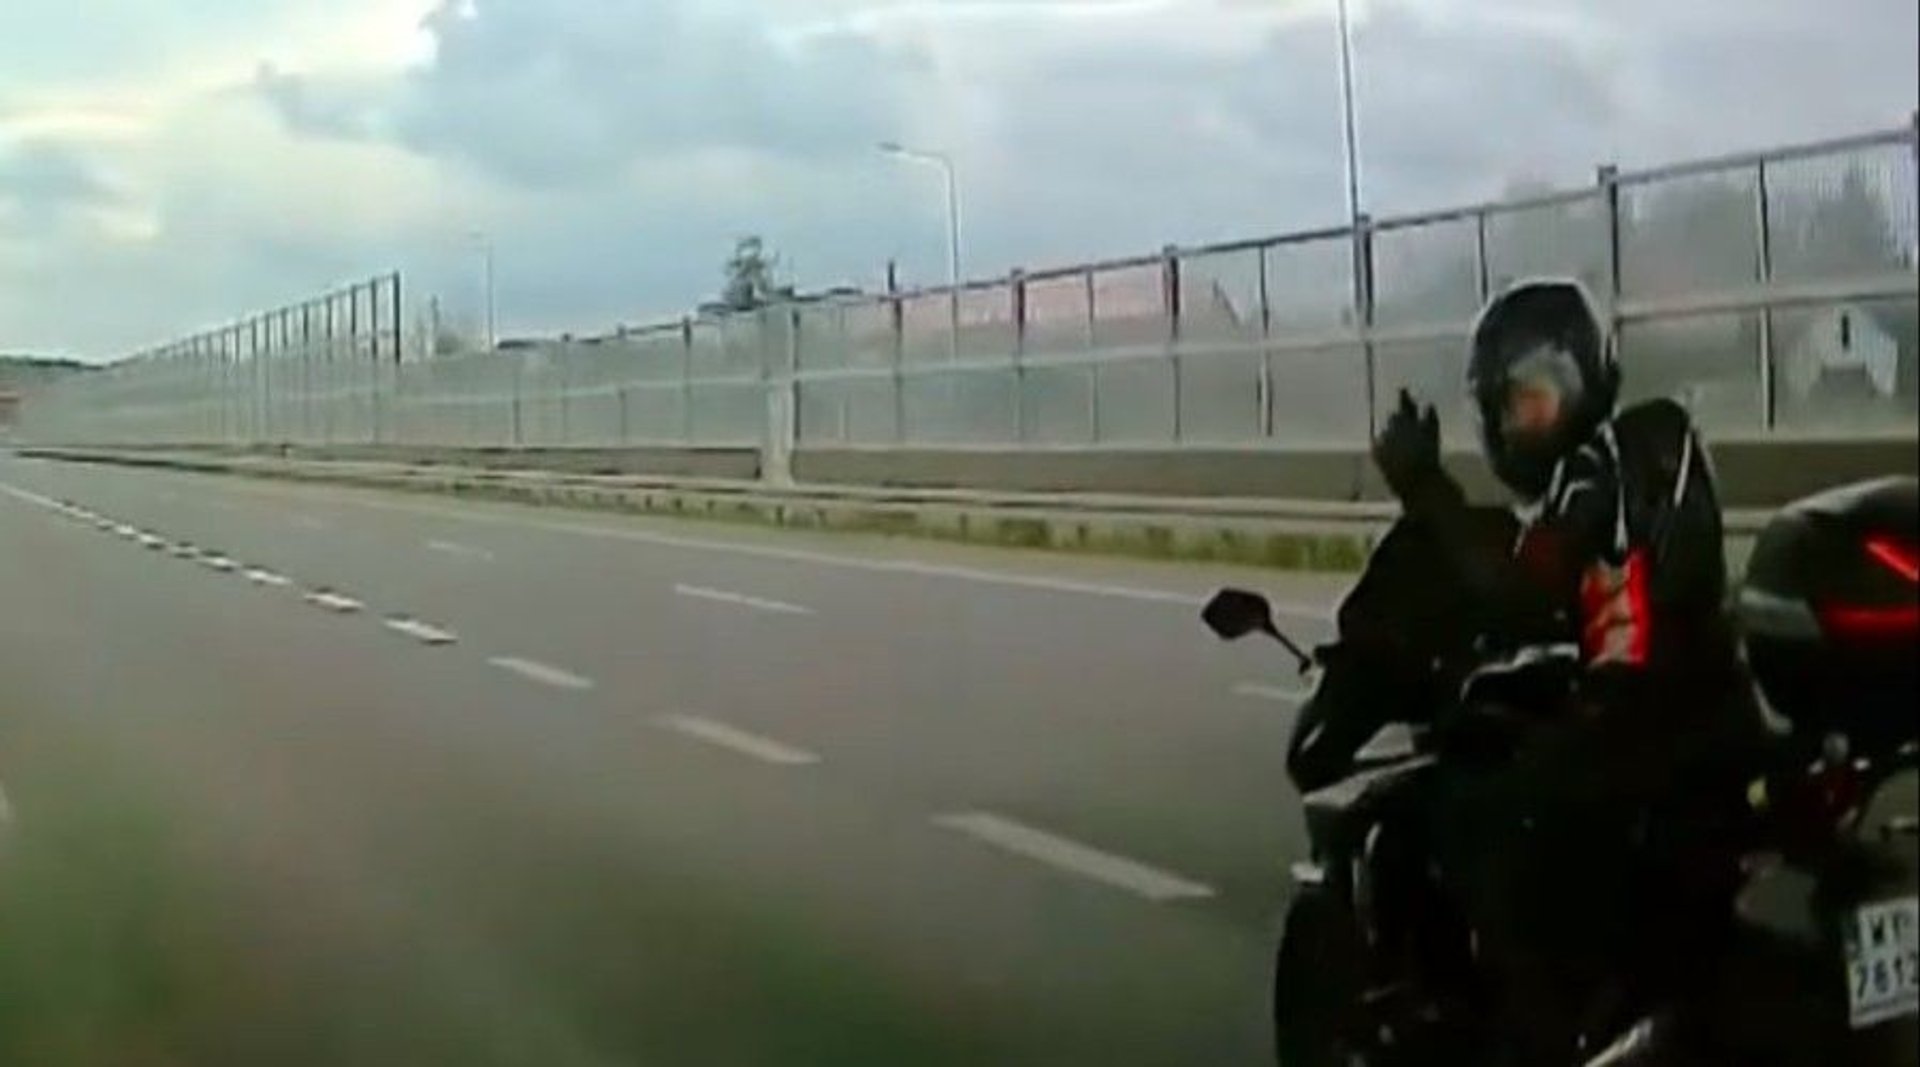 motocyklista-ryzykowne-zachowanie